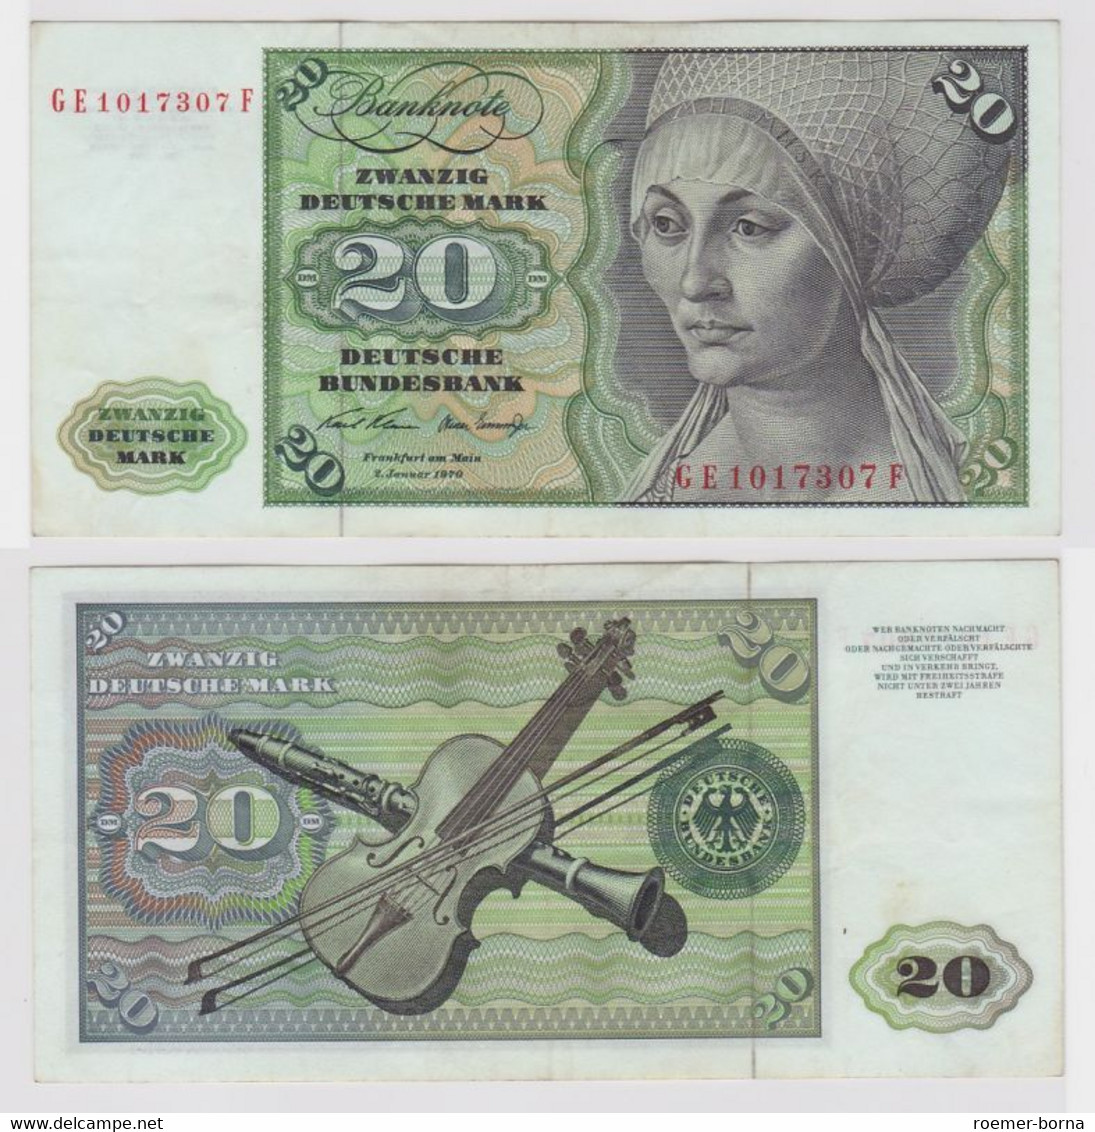 T148161 Banknote 20 DM Deutsche Mark Ro. 271b Schein 2.Jan. 1970 KN GE 1017307 F - 20 DM